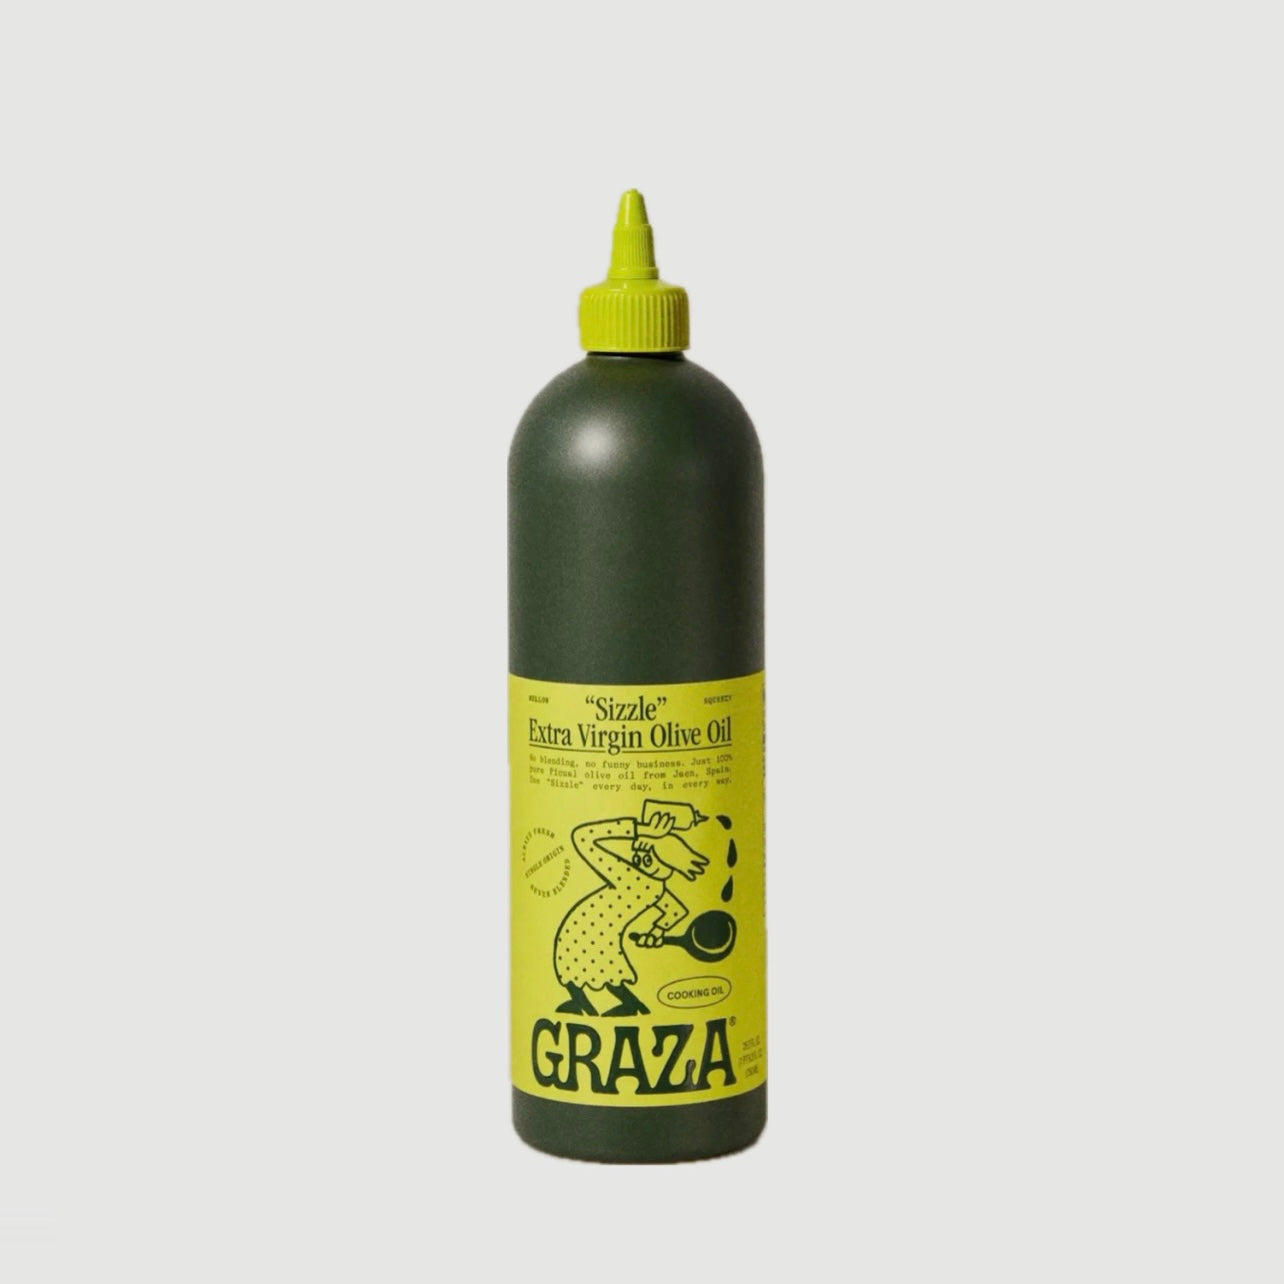 GRAZA "SIZZLE" OLIVE OIL 750ml